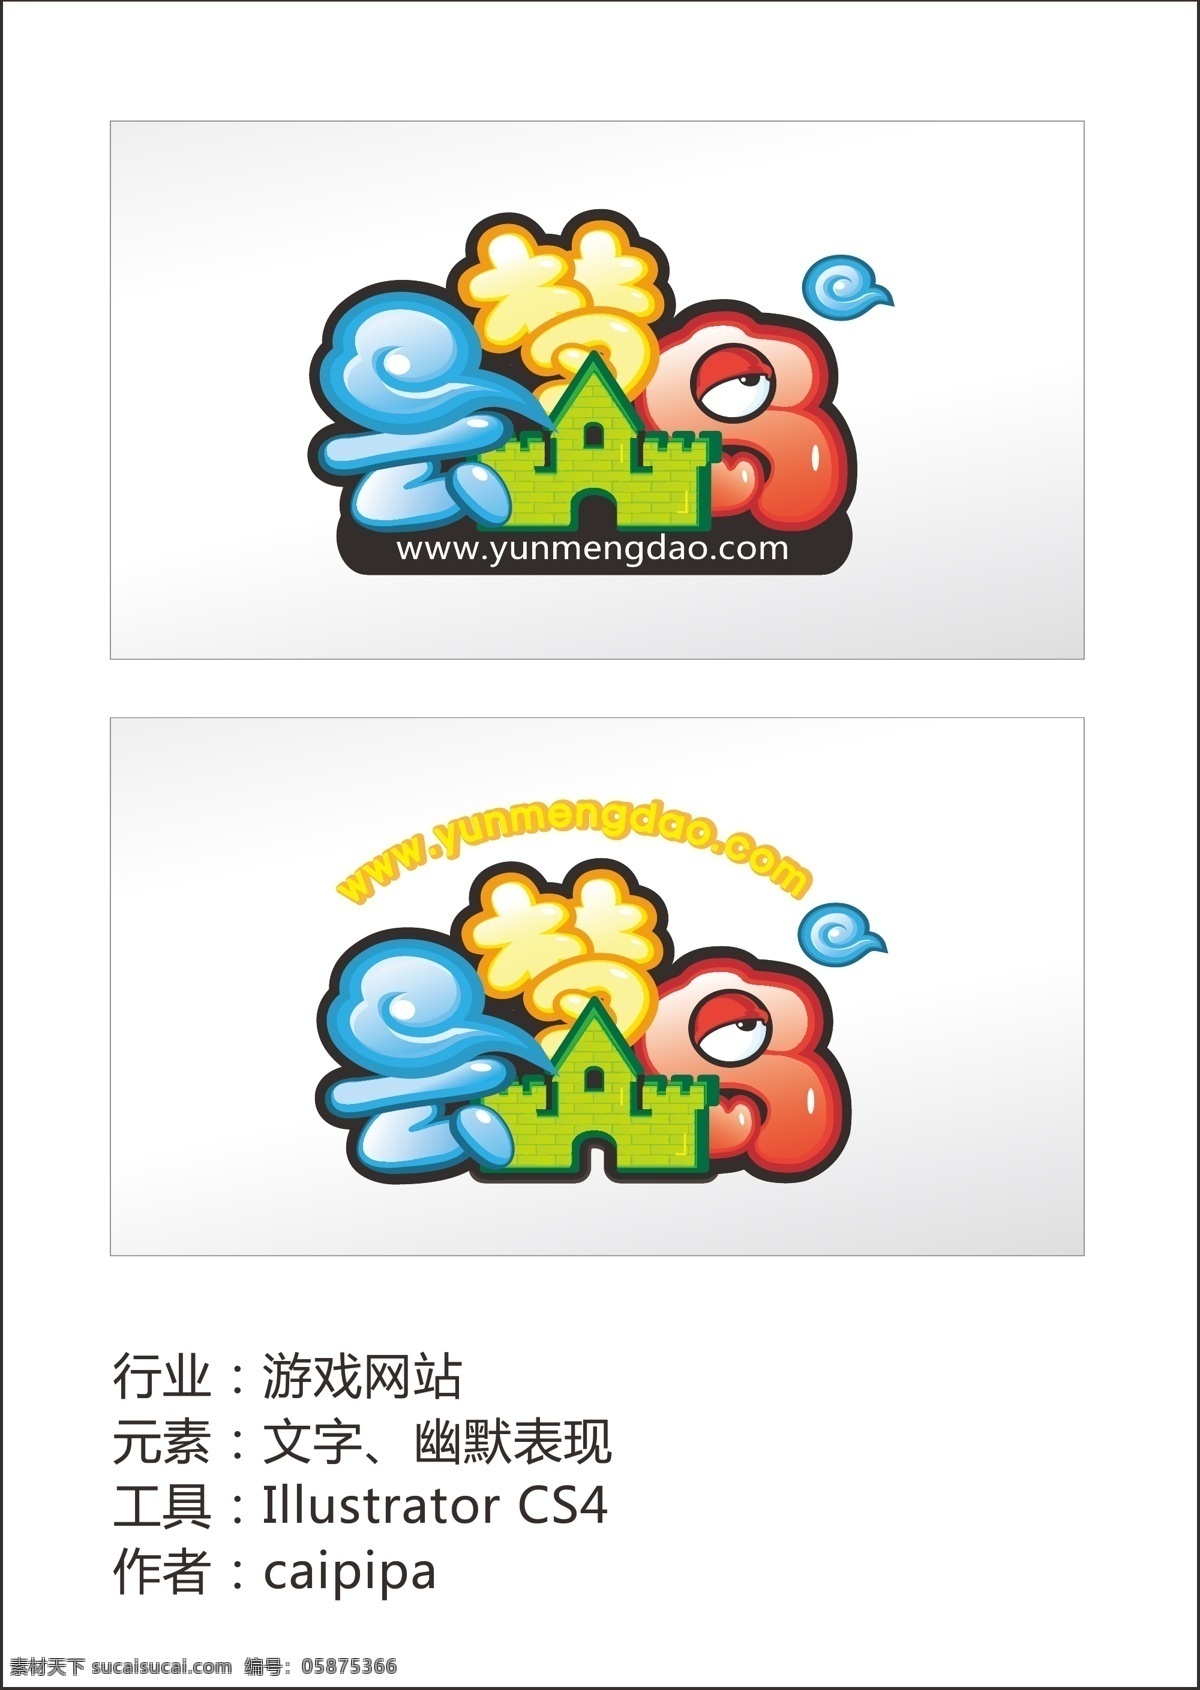 卡通 网站 logo 网站logo 矢量 模板下载 psd源文件 logo设计